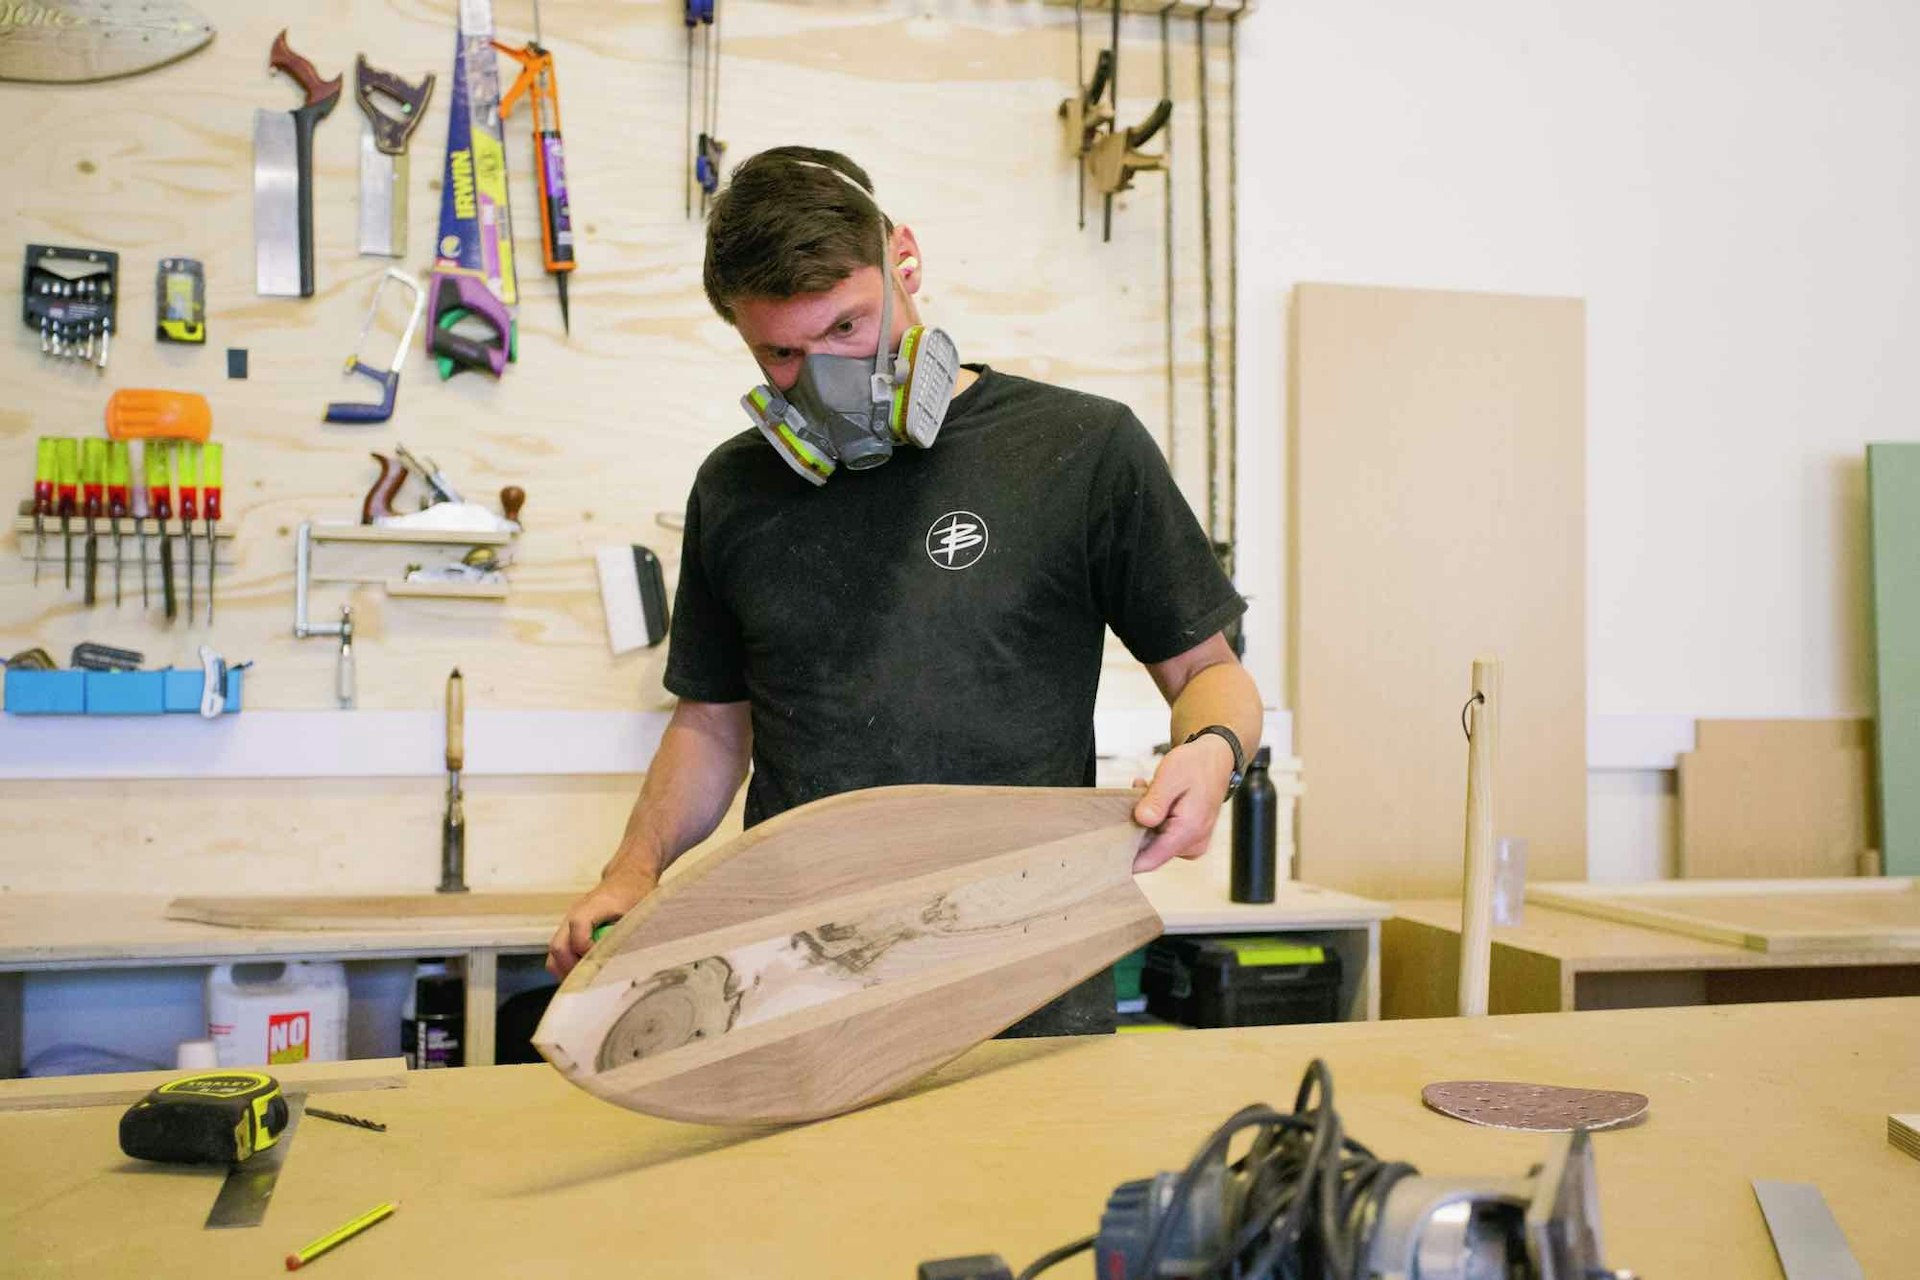 The indie board-builders bringing DIY back to skate